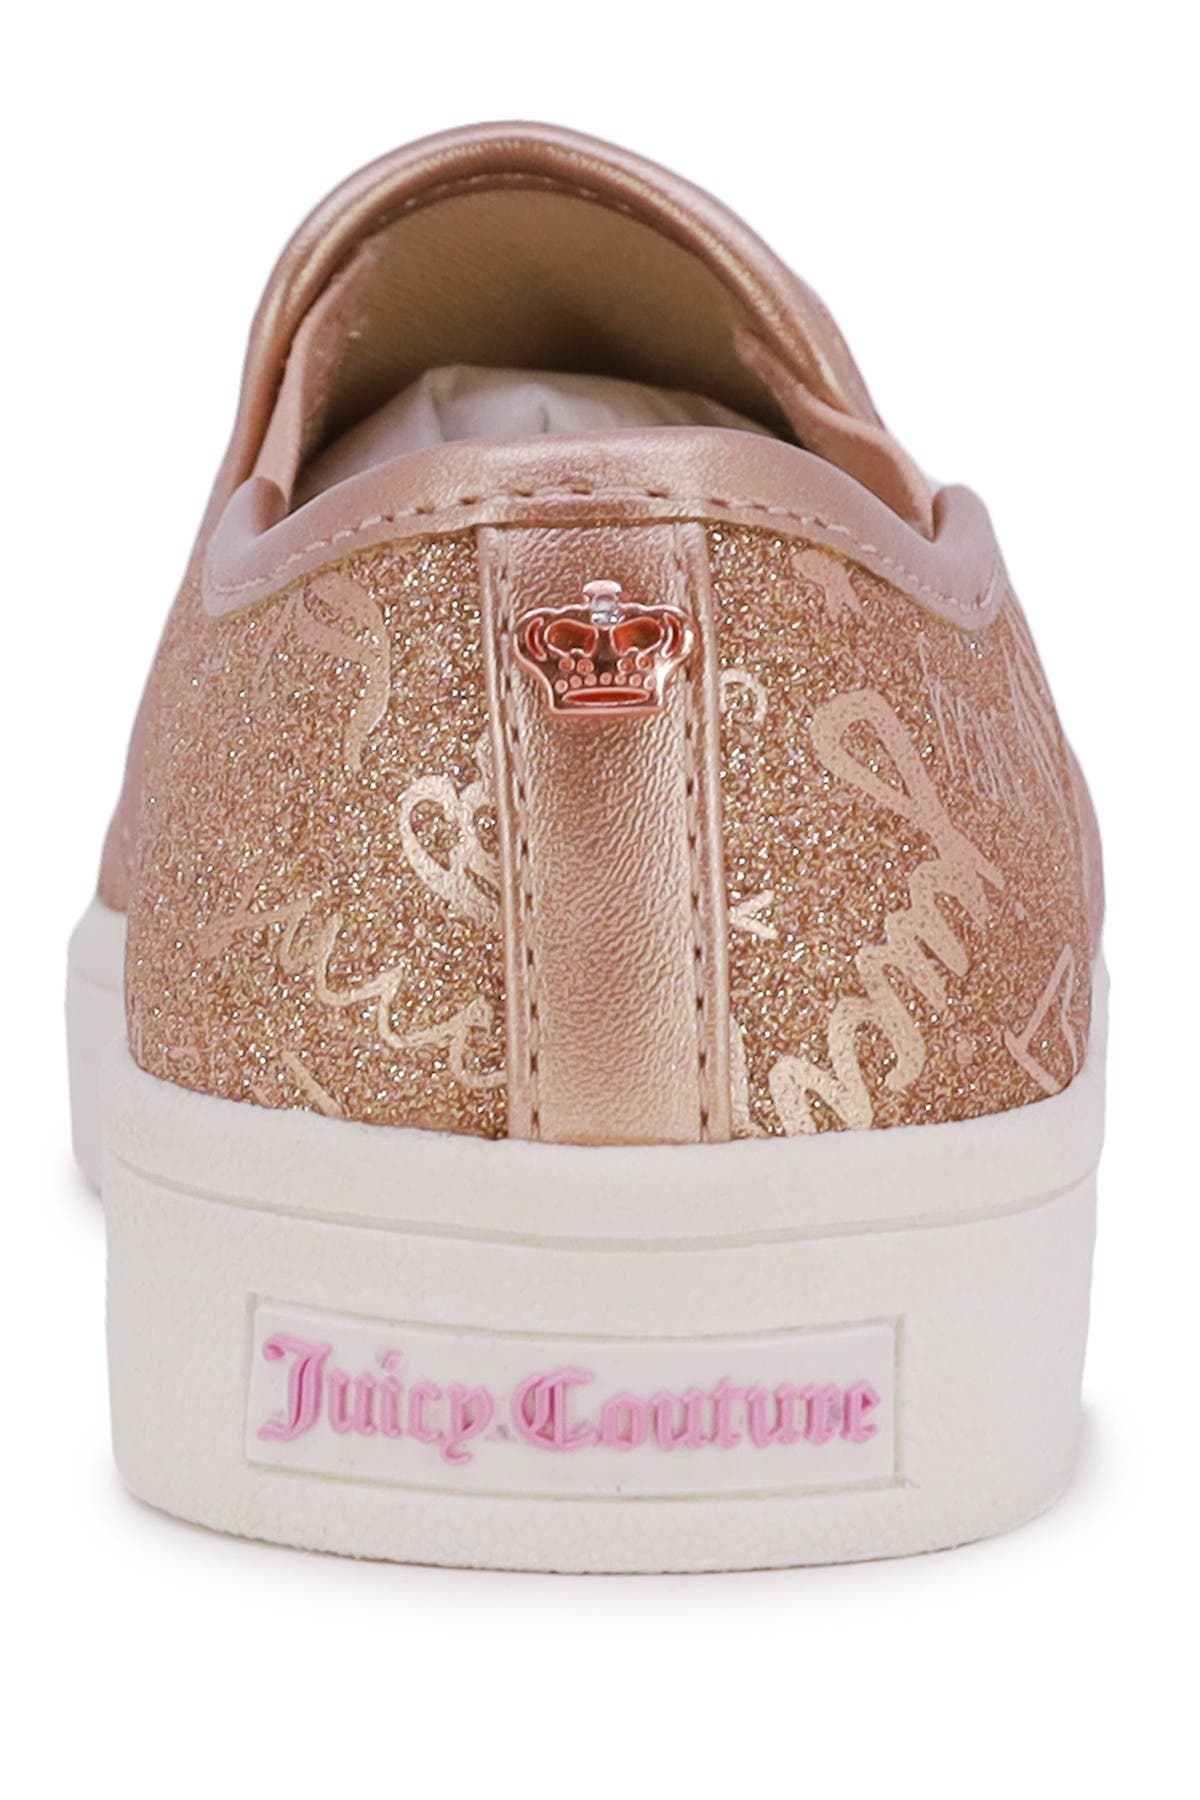 Juicy Couture Kids' Artesia Slip-on Sneaker In Brown Overflow